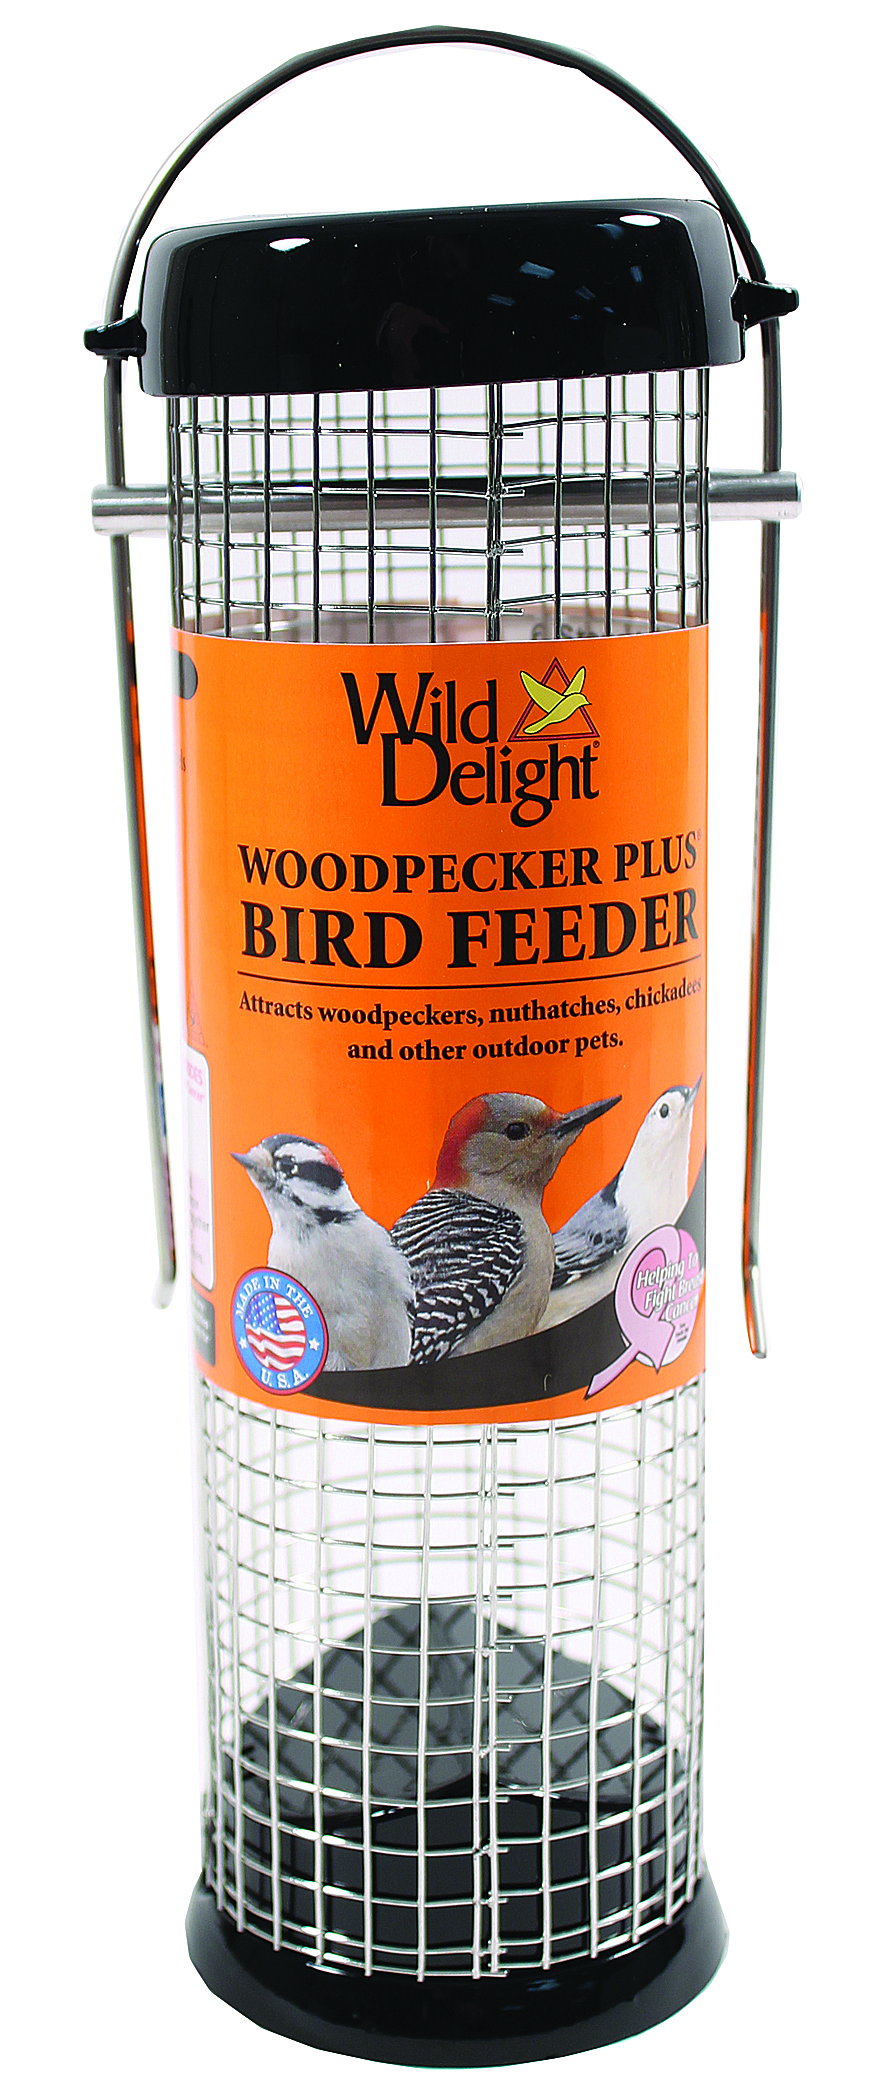 WILD DELIGHT WOODPECKER PLUS BIRD FEEDER